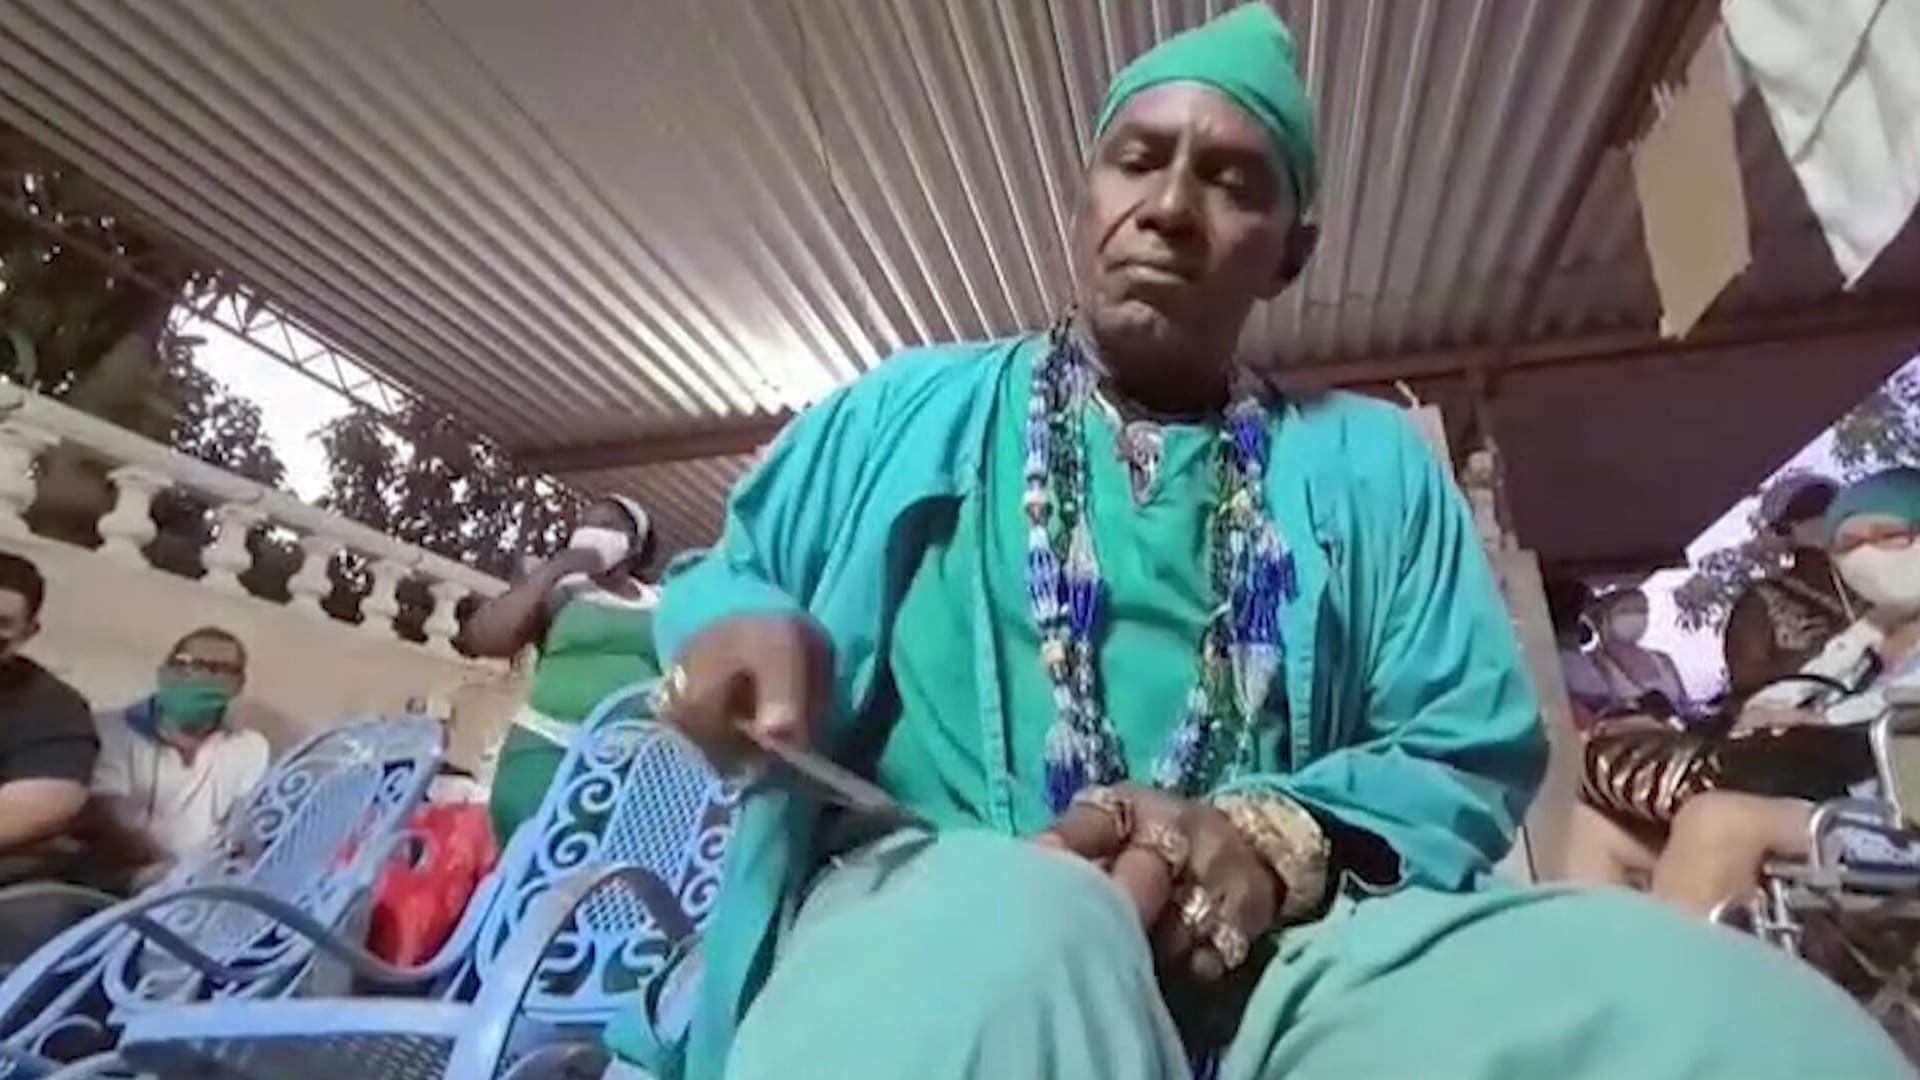 Svérázný šaman sklízí na Kubě velké úspěchy, koronavirus léčí rumem.